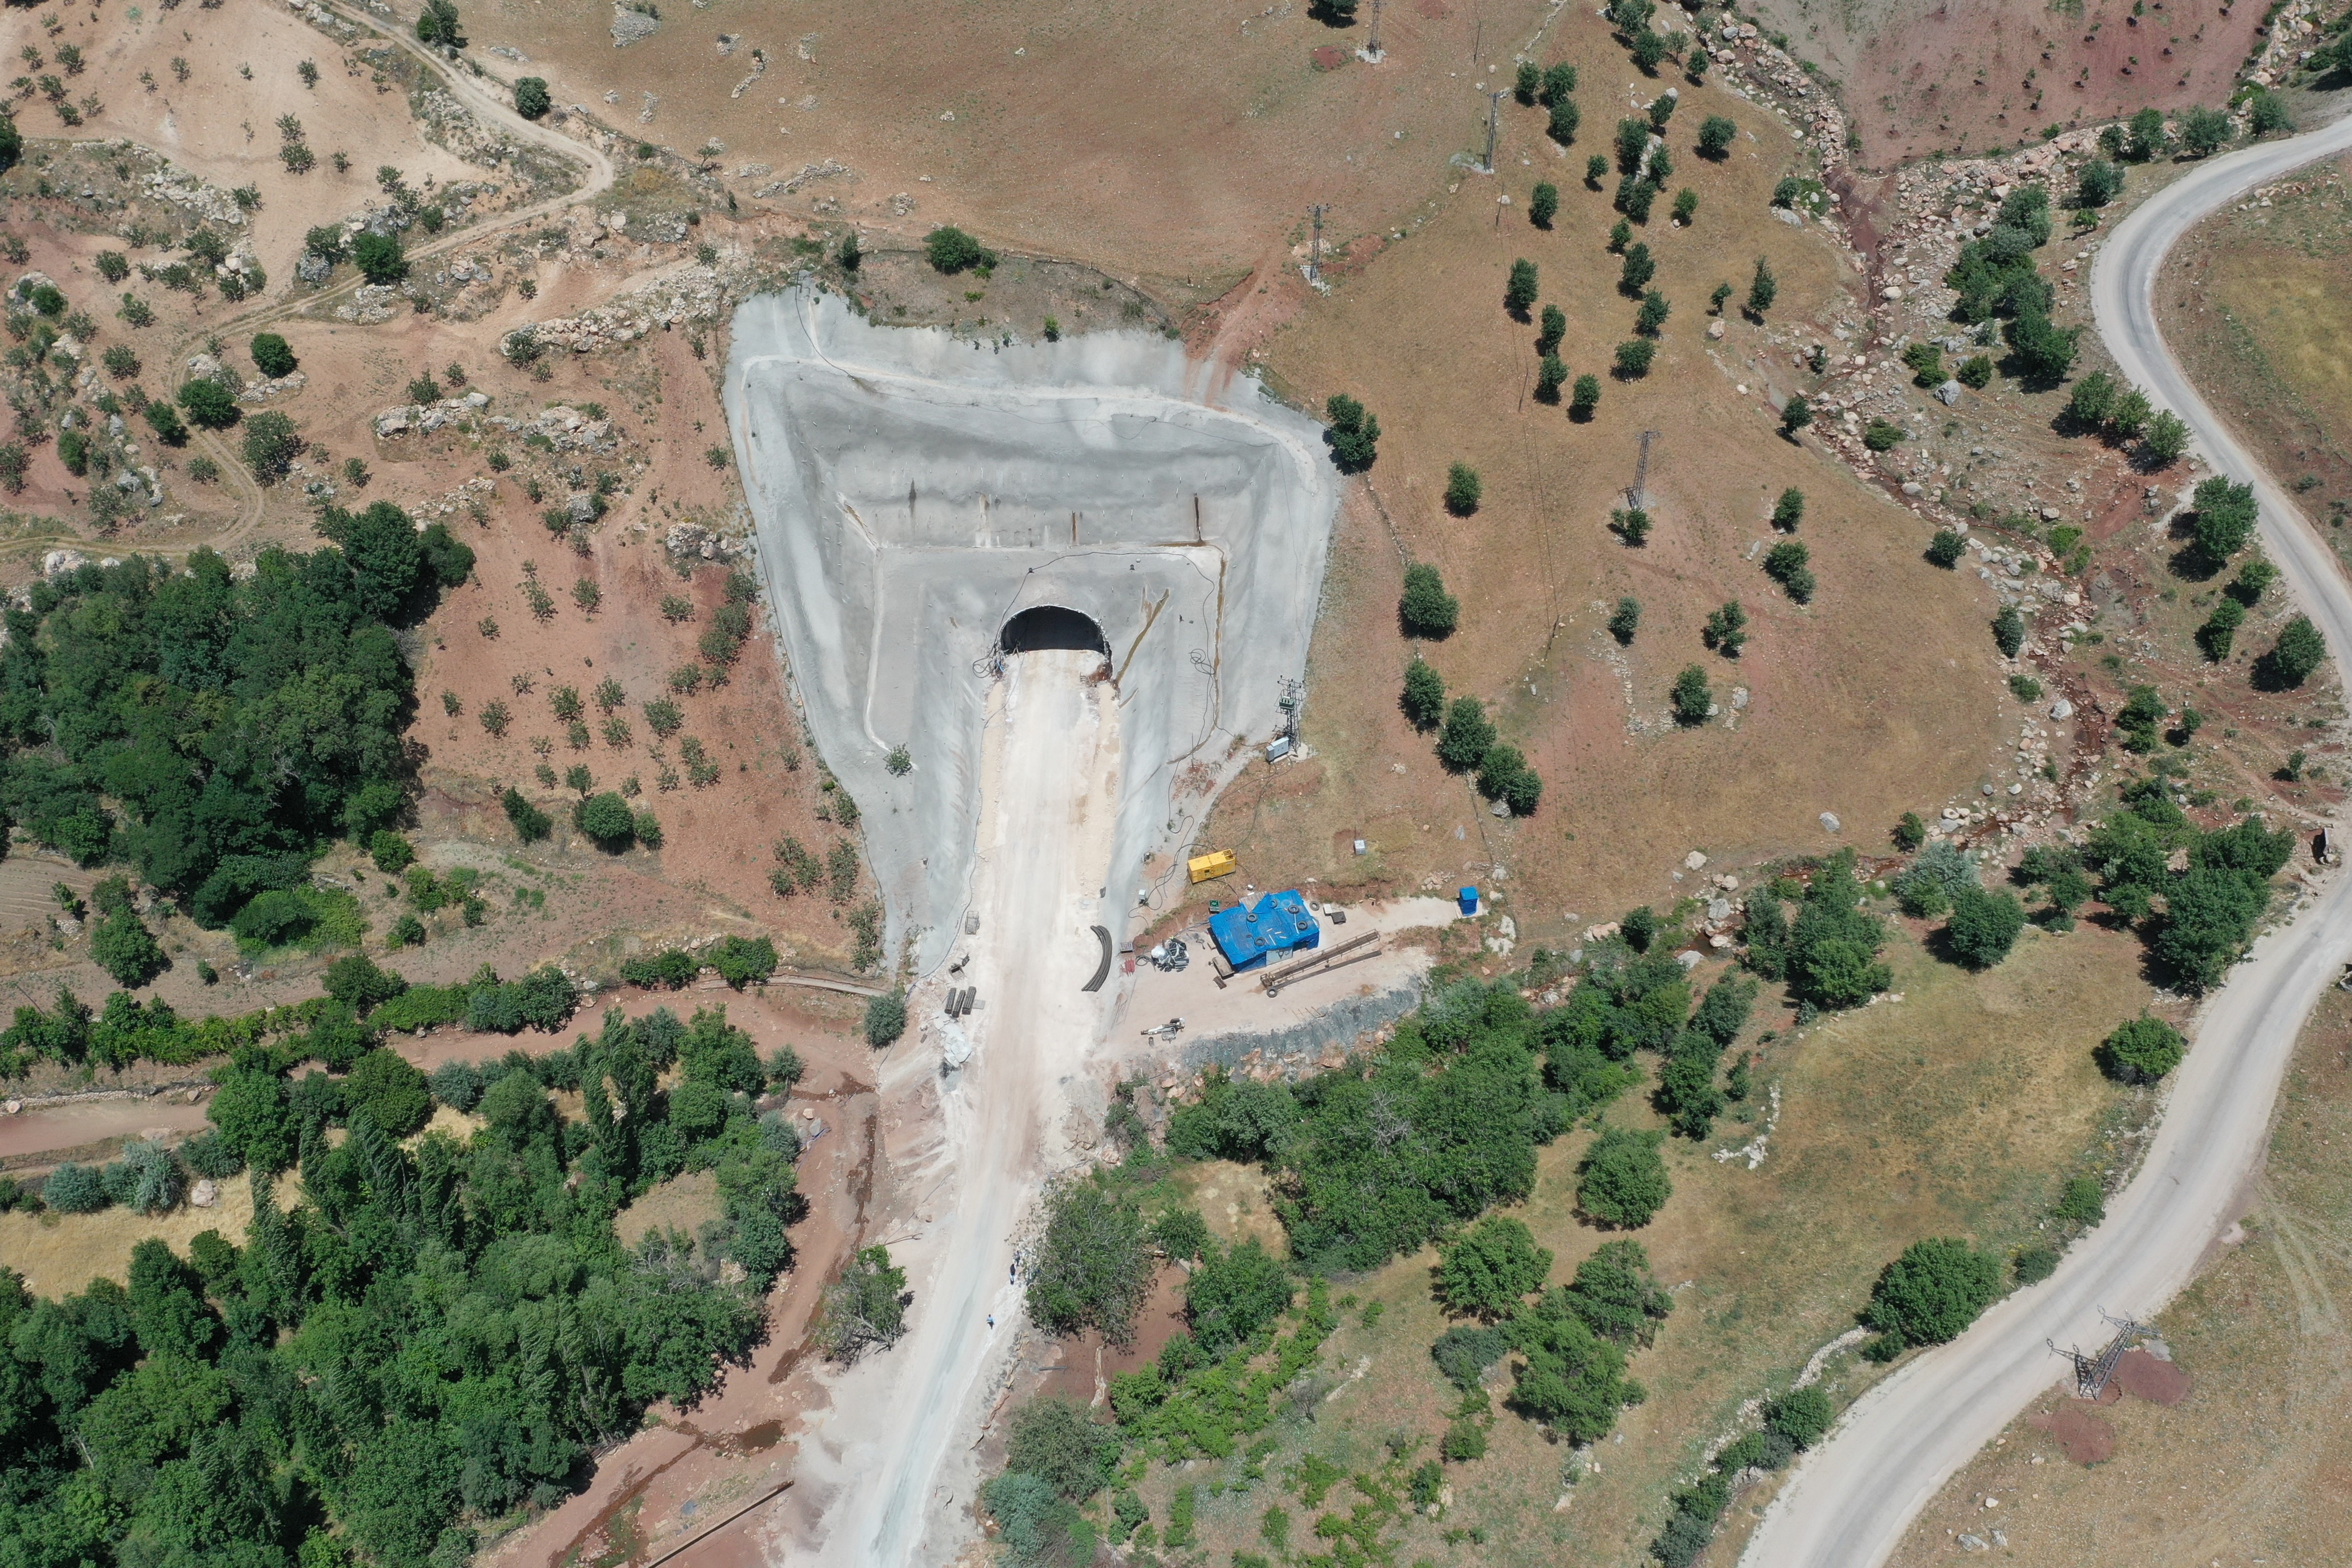 Huzurun tesis edildiği Siirt ve Şırnak'ta dağlarda açılan tünellerle ulaşım kolaylaşacak